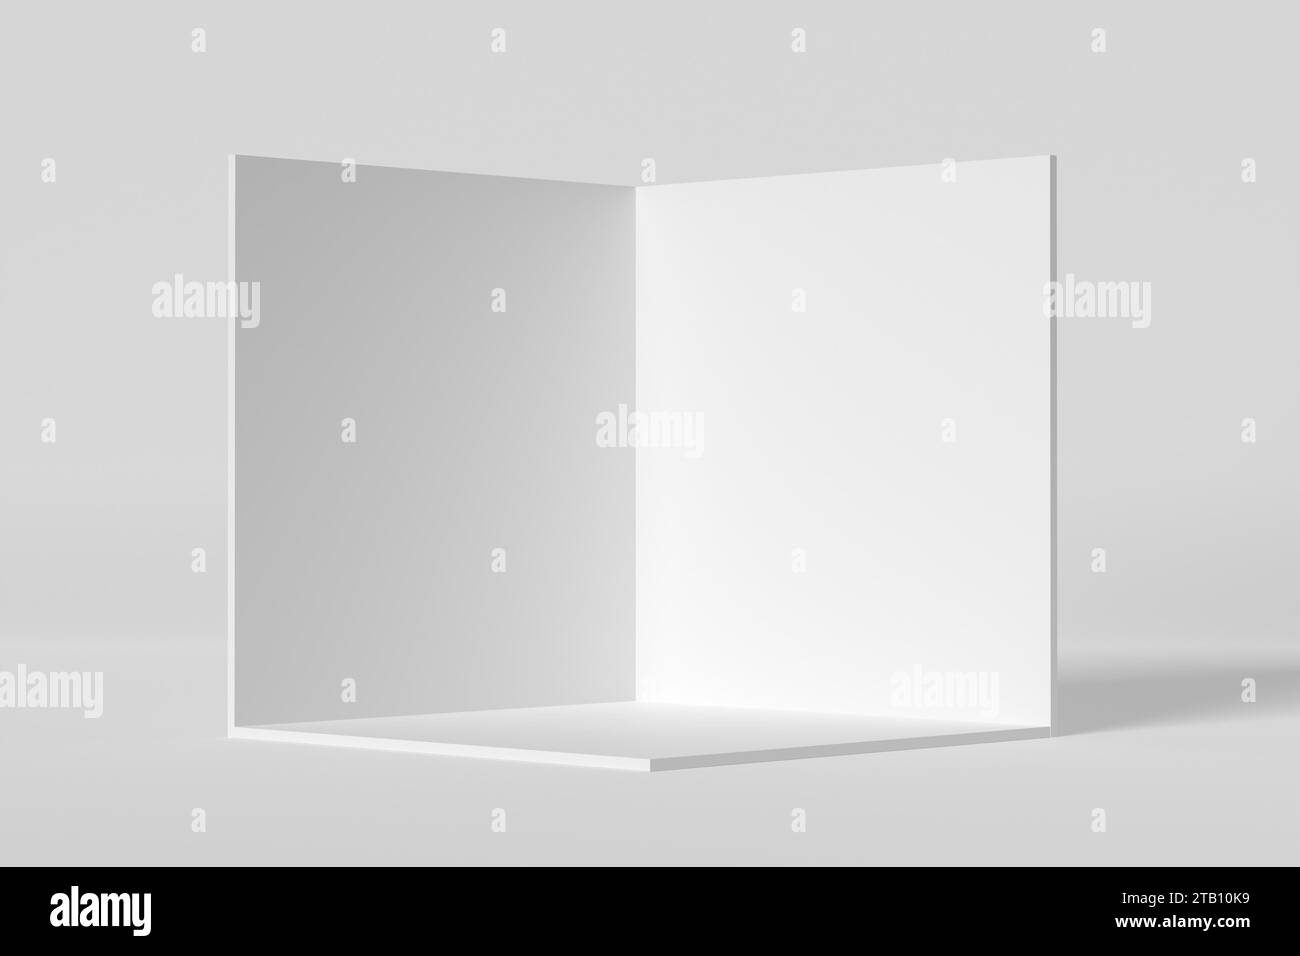 Coupe transversale d'une boîte cubique à l'intérieur d'une pièce blanche. Podium géométrique vide ou plate-forme pour l'affichage du produit. Modèle de boîte vierge de rendu 3D. Banque D'Images